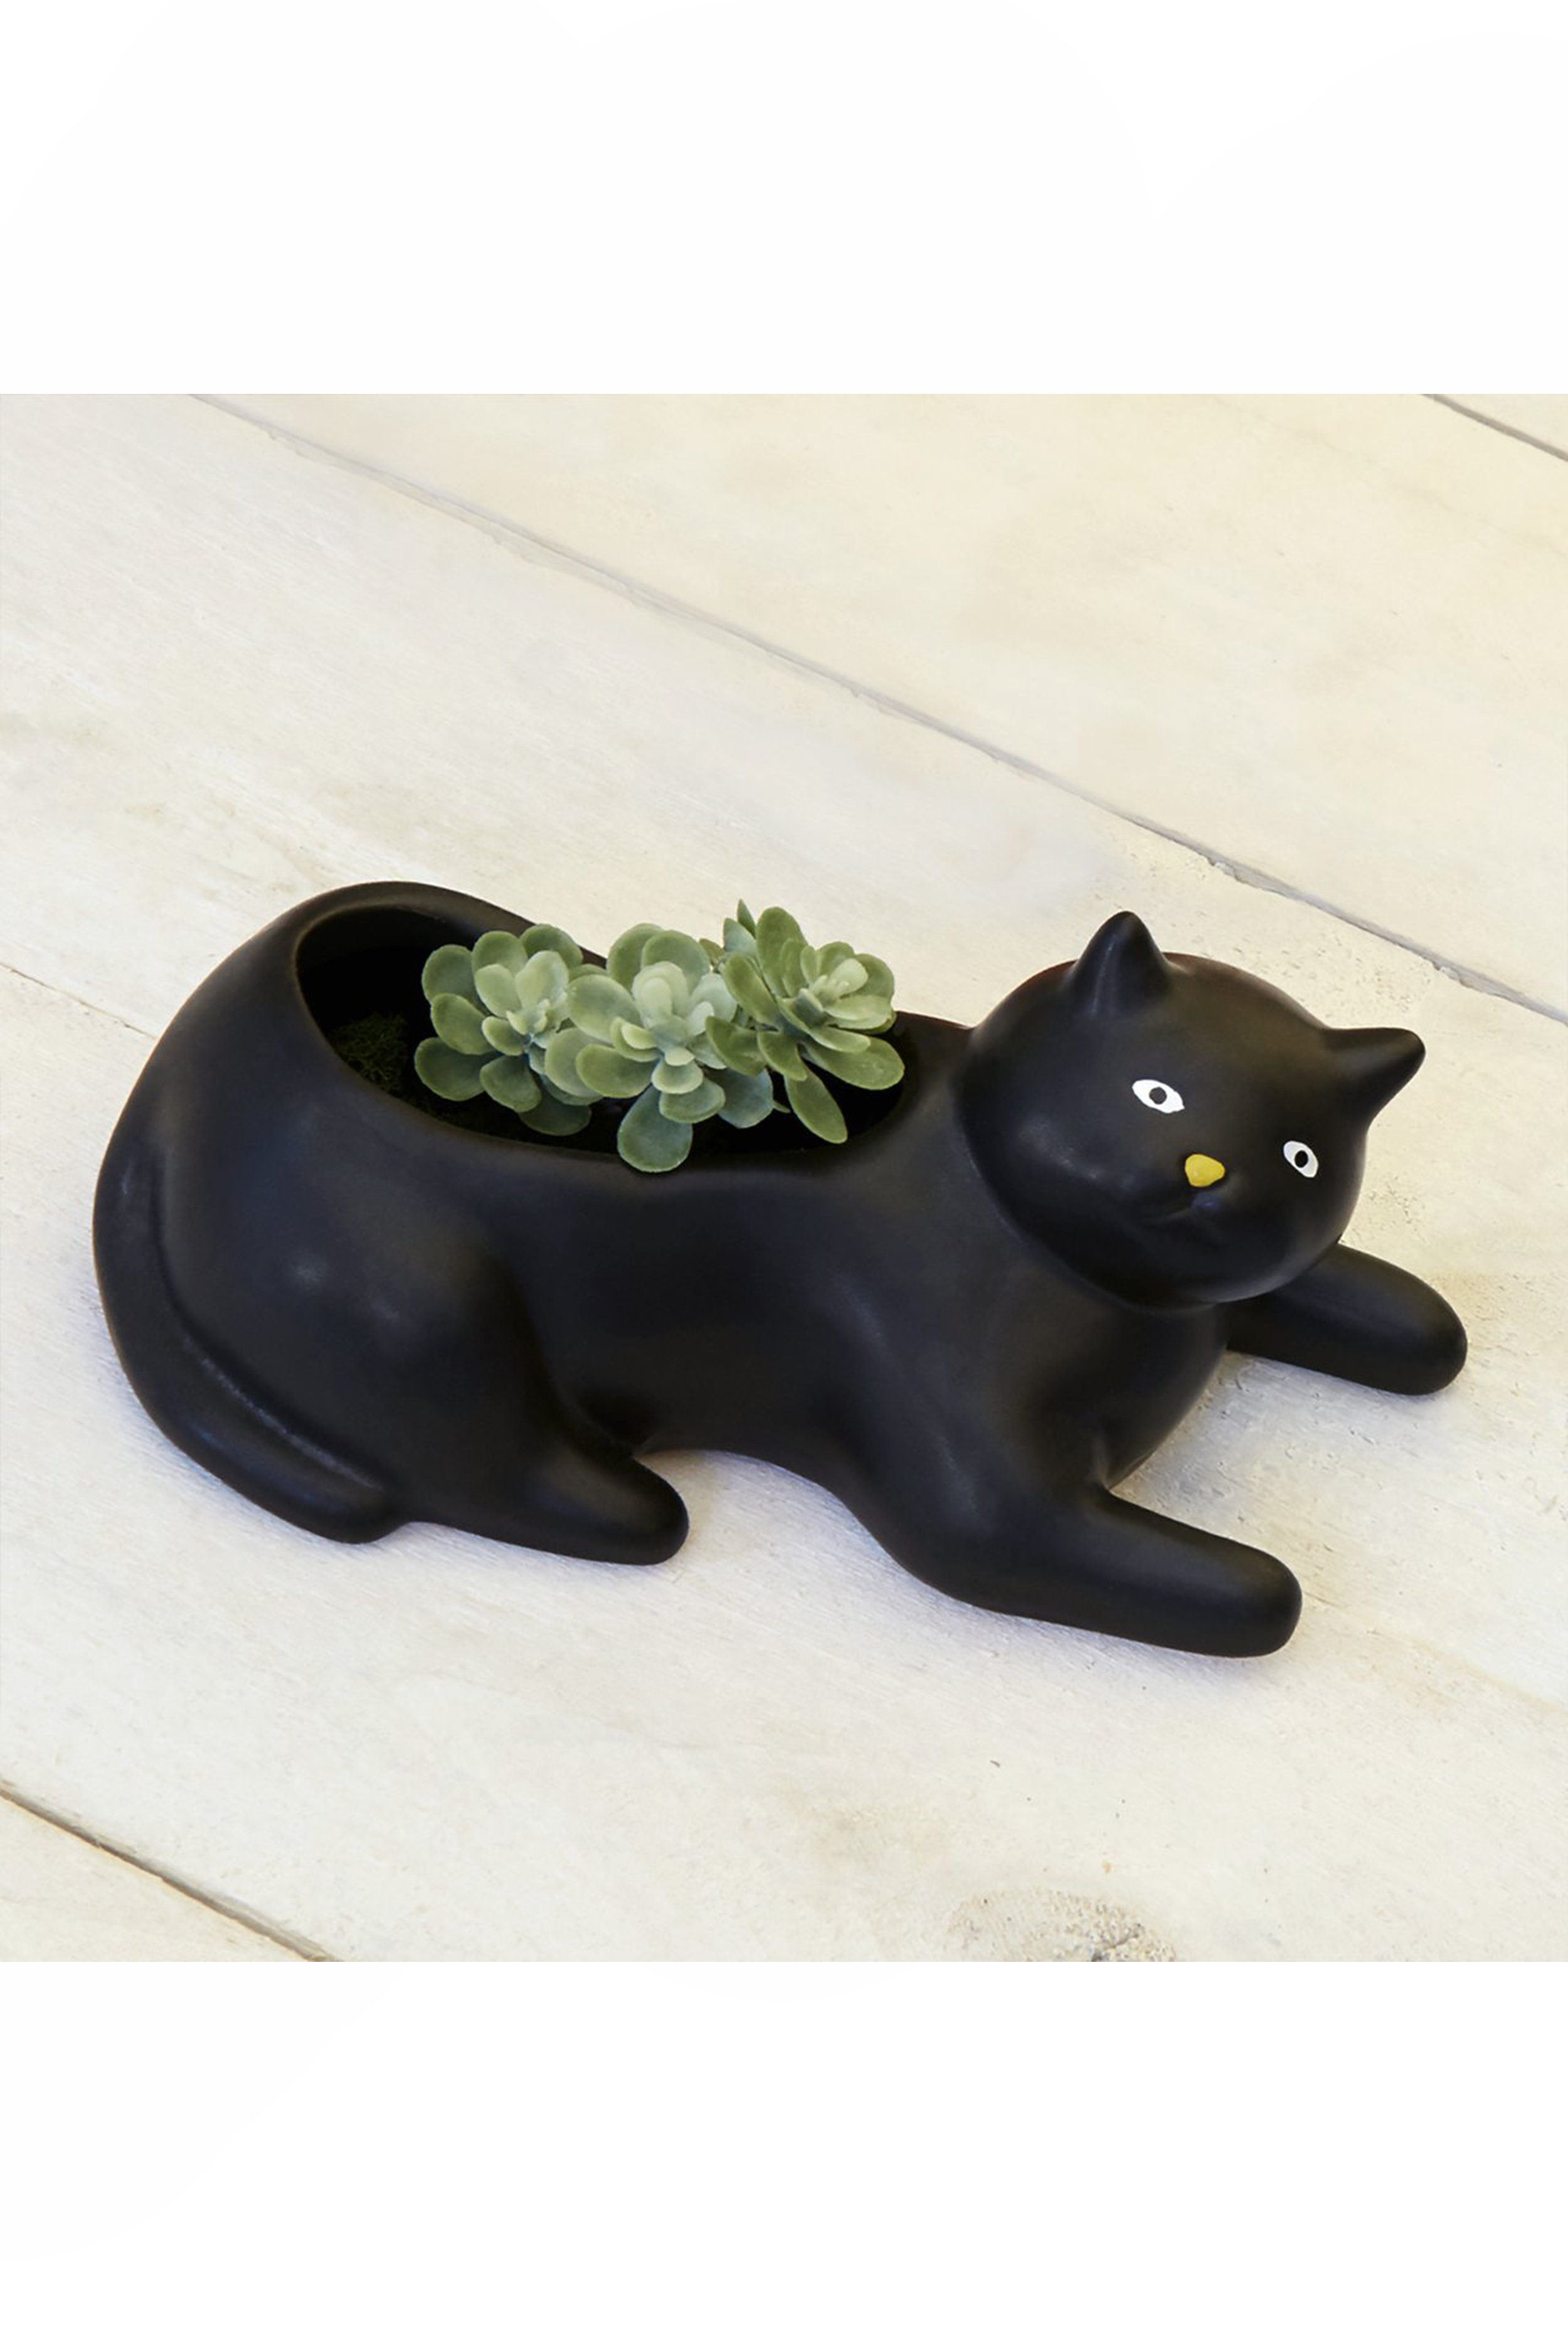 Cosmo the Black Cat Planter - Philistine